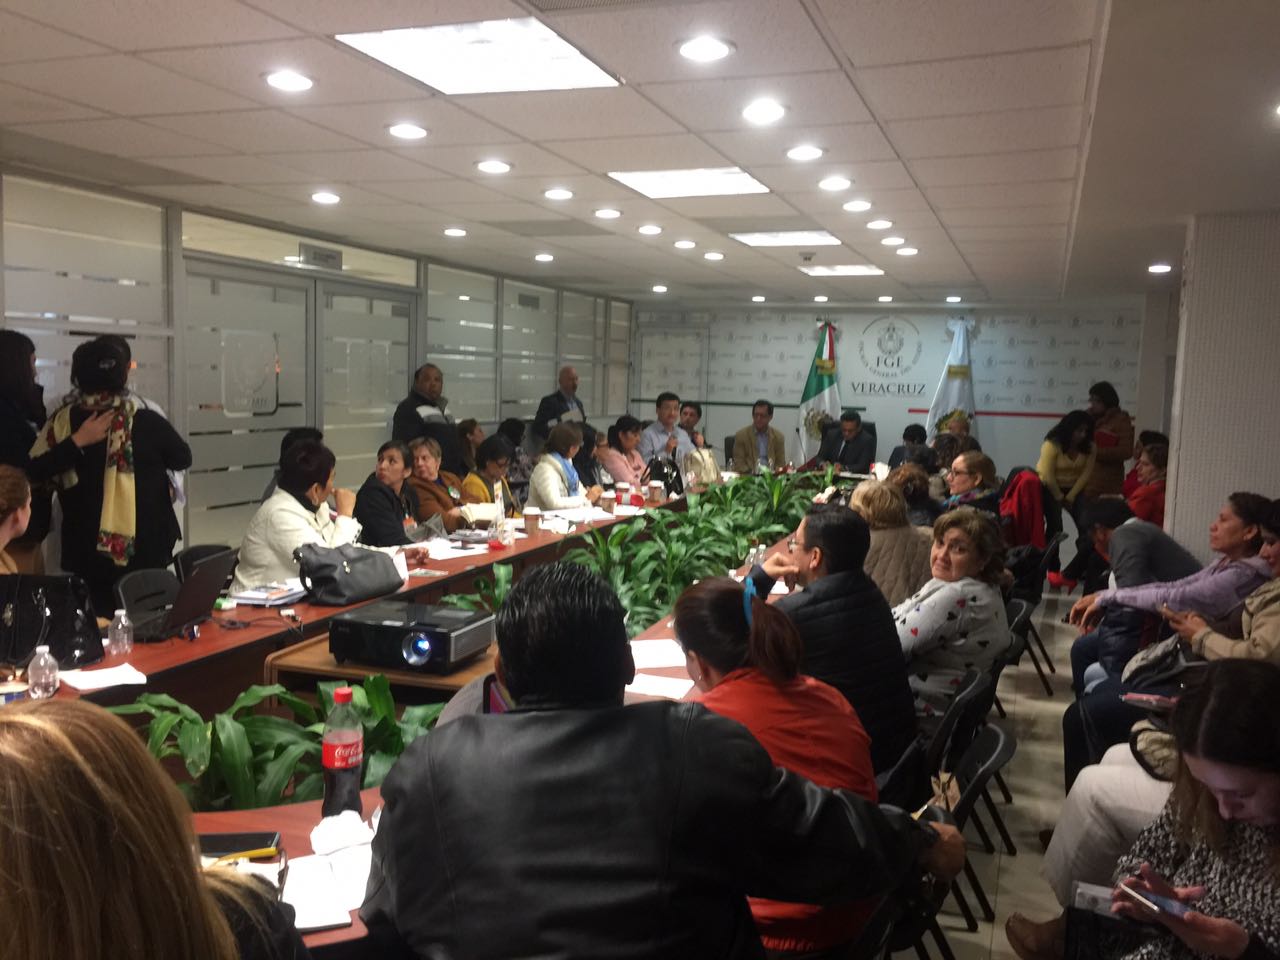 La reunión se desarrolla en Xalapa, Veracruz y se trabaja directamente con personas y colectivos de víctimas de desapariciones.